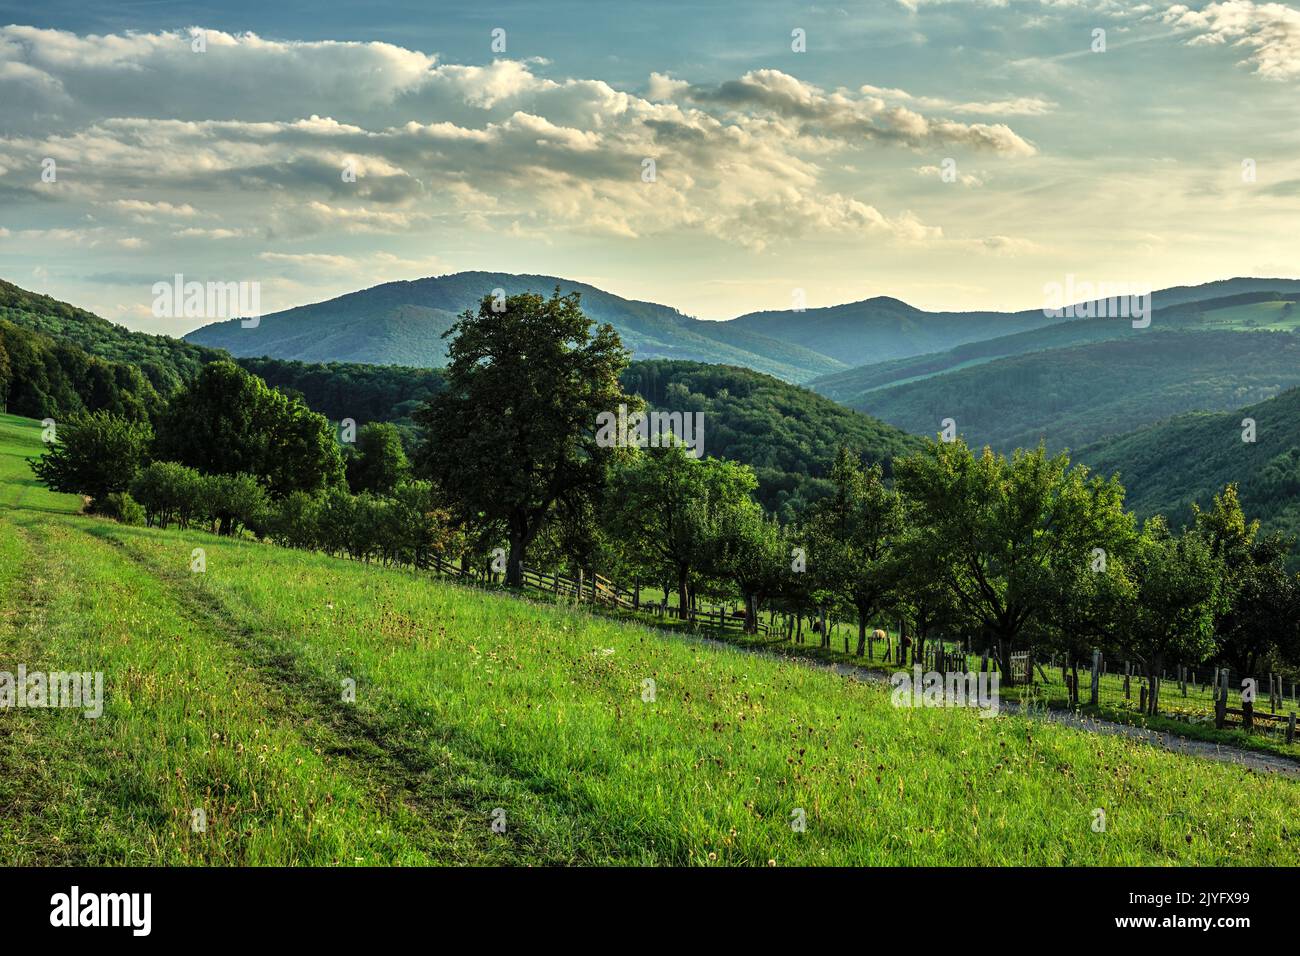 Sommer hügelige ländliche Landschaft mit Pfad in der Wiese. Mit einem Zaun und Bäumen. Wald und Hügel im Hintergrund. Wunderschöne Wolken. Dubrava, Slowakei. Stockfoto